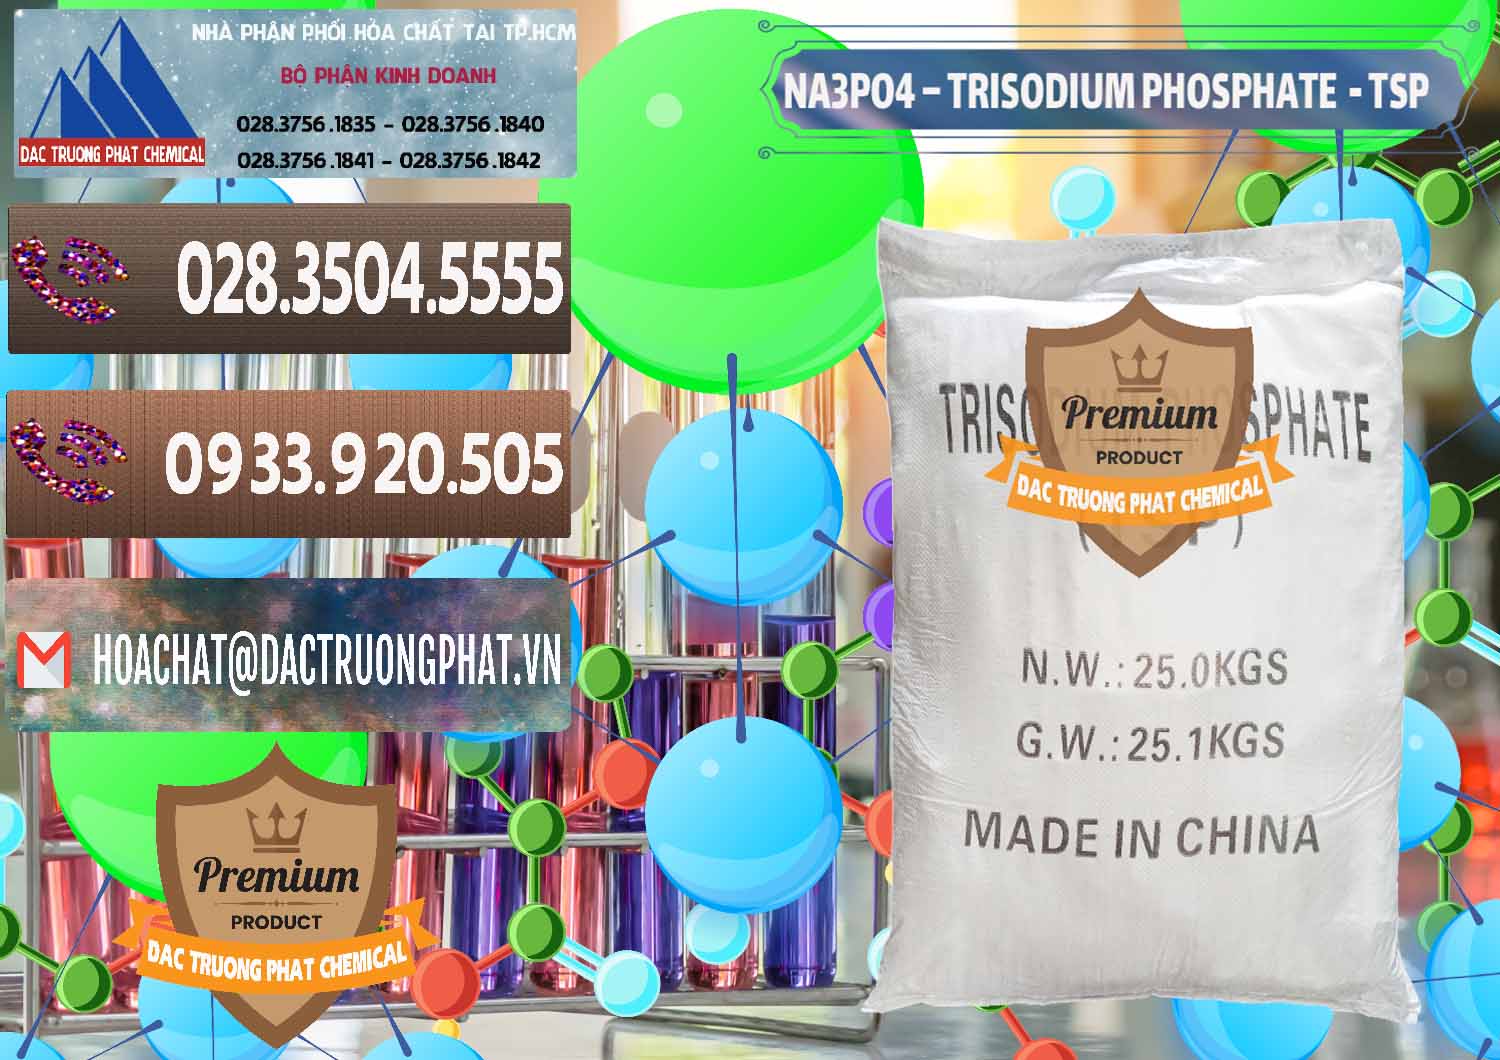 Nơi chuyên phân phối & bán Na3PO4 – Trisodium Phosphate Trung Quốc China TSP - 0103 - Kinh doanh _ phân phối hóa chất tại TP.HCM - hoachatviet.net